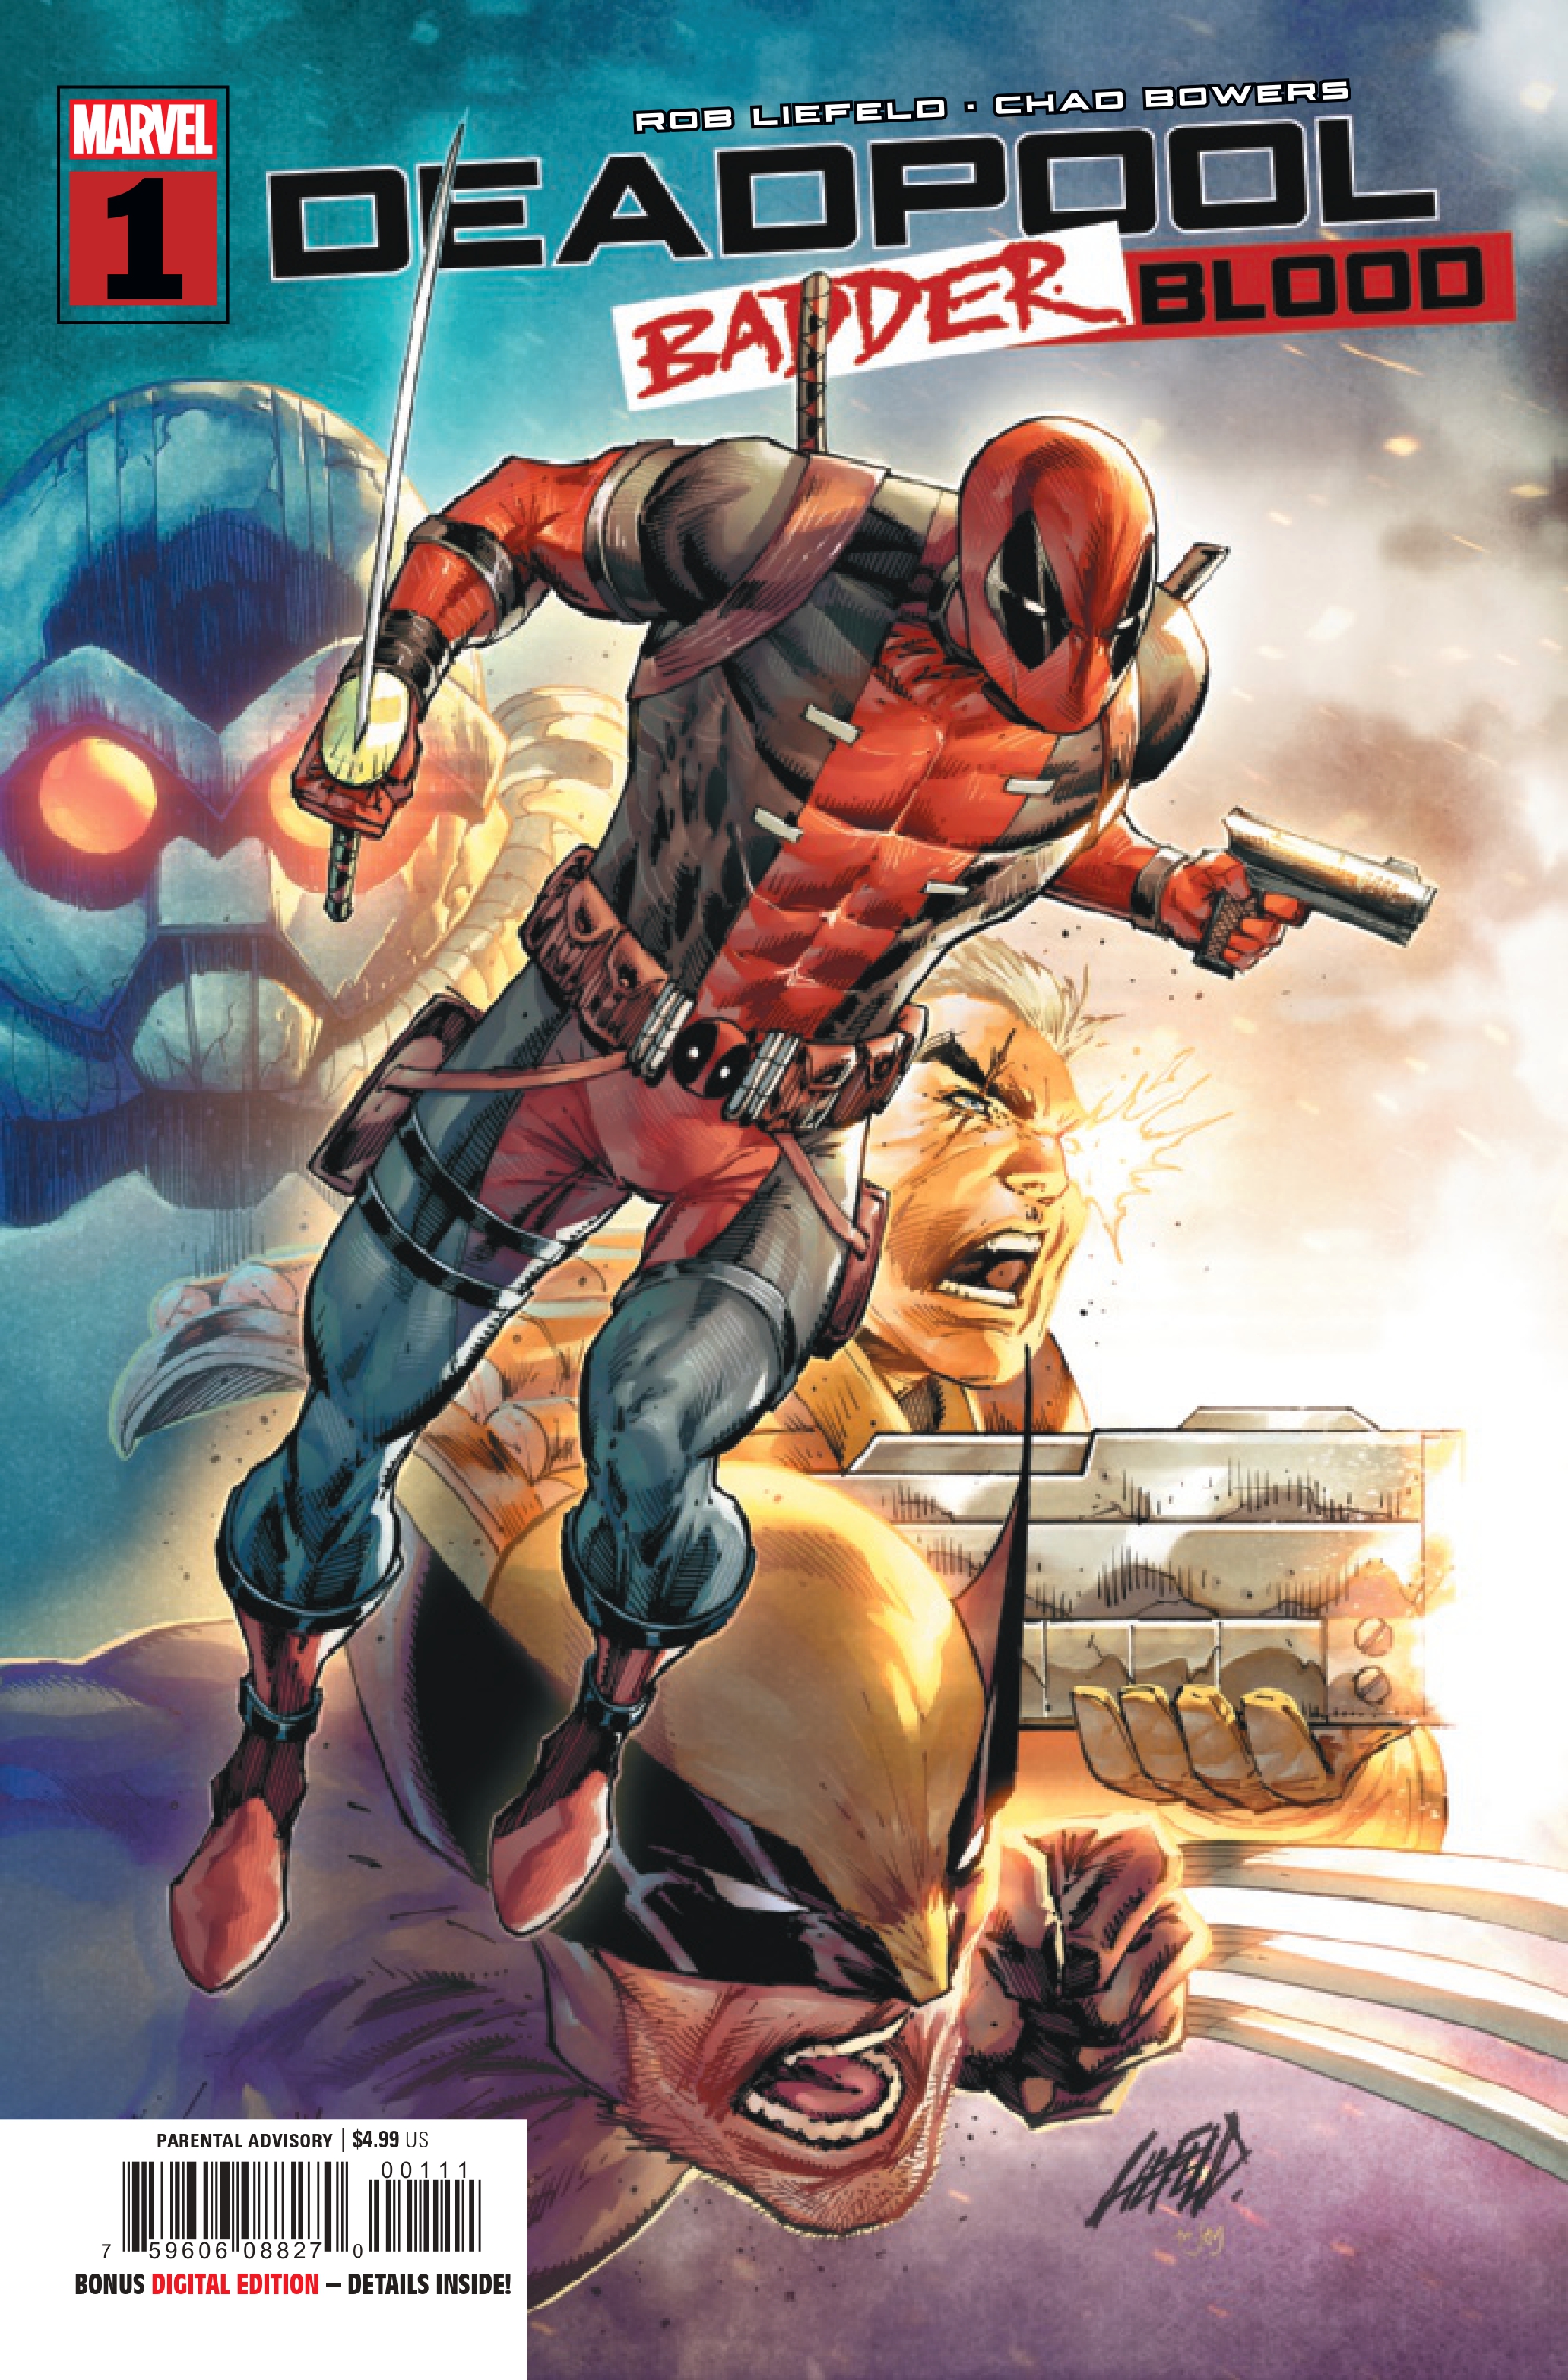 La couverture de Deadpool : Badder Blood #1.